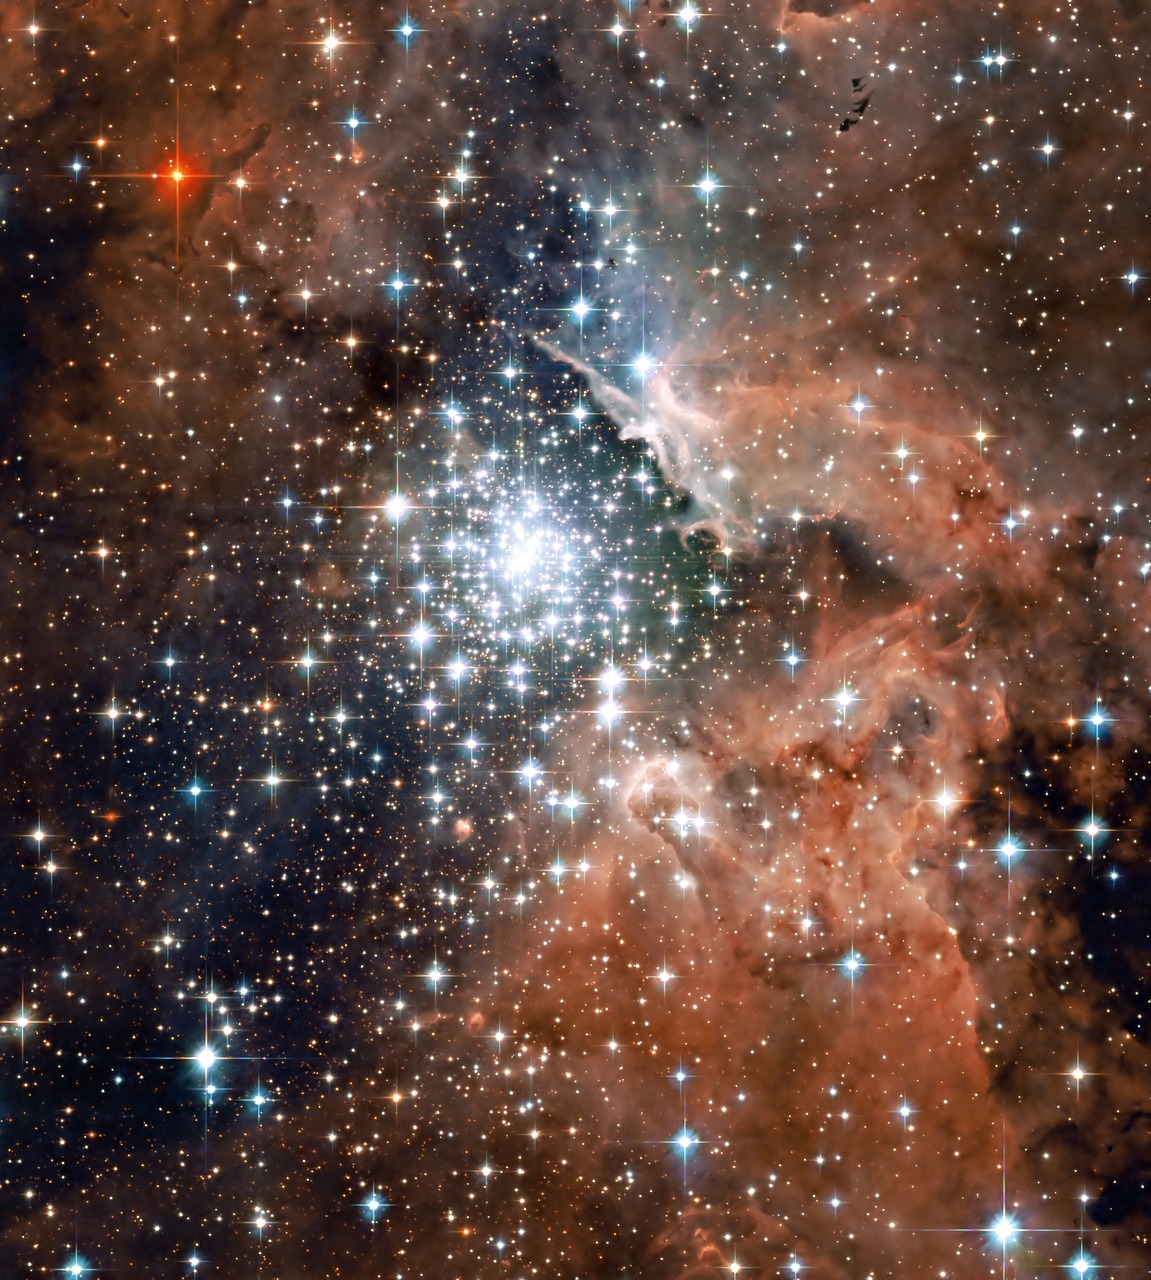 Ngc 3603, Tūslė, Erdvė, Žvaigždės, Žvaigždžių Grupė, Žvaigždynas, Astronominis Objektas, Dulkės, Dujos, Žvaigždžių Formavimas